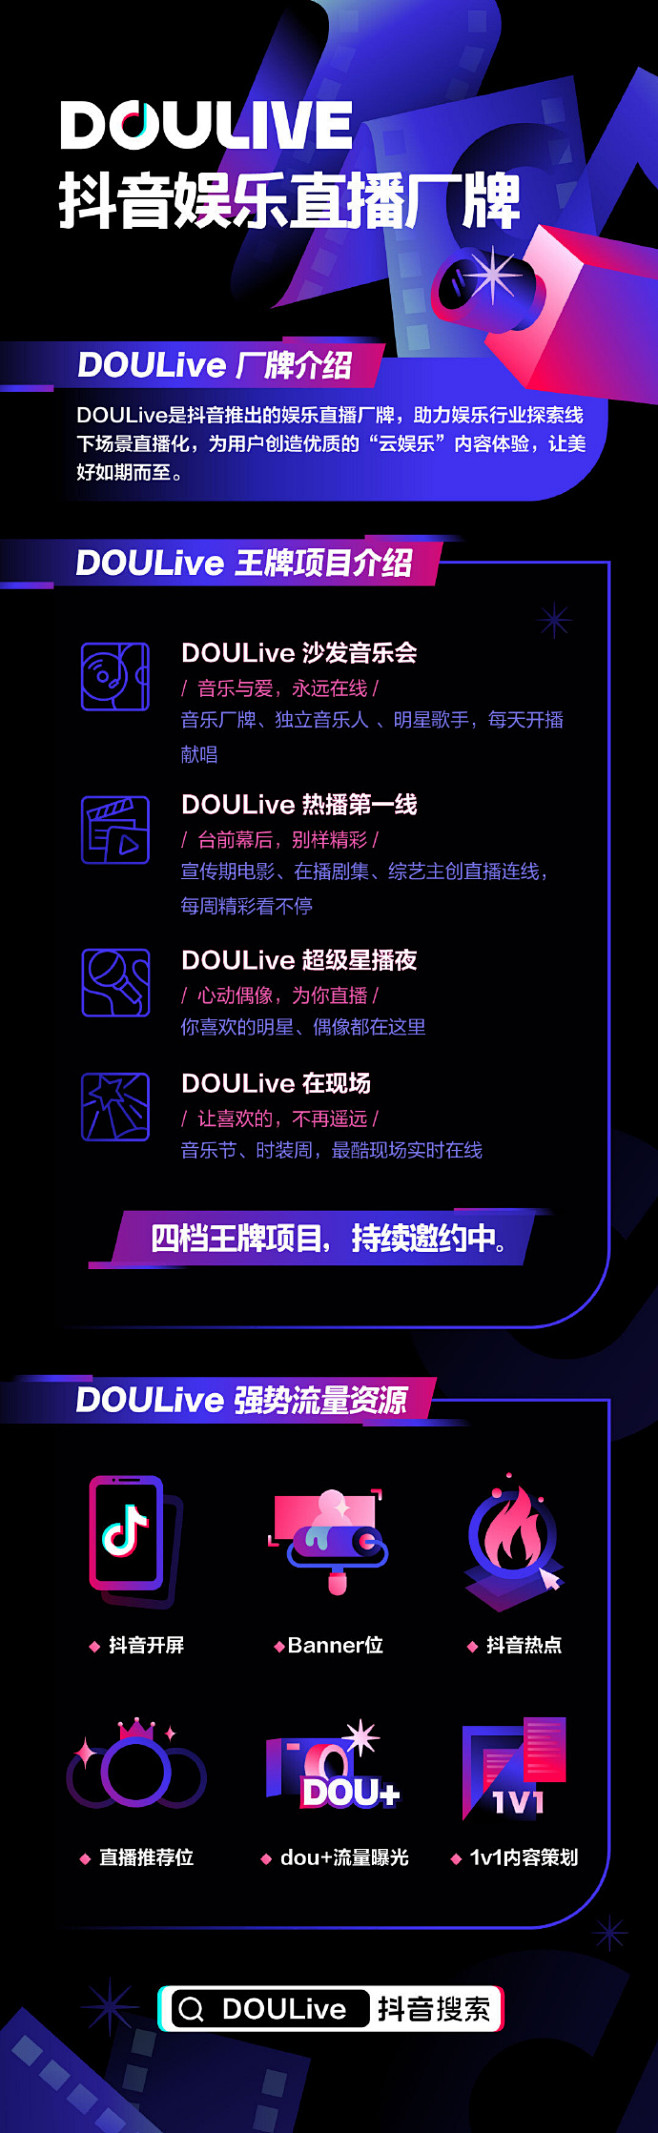 【抖音娱乐直播厂牌DOULive正式推出...